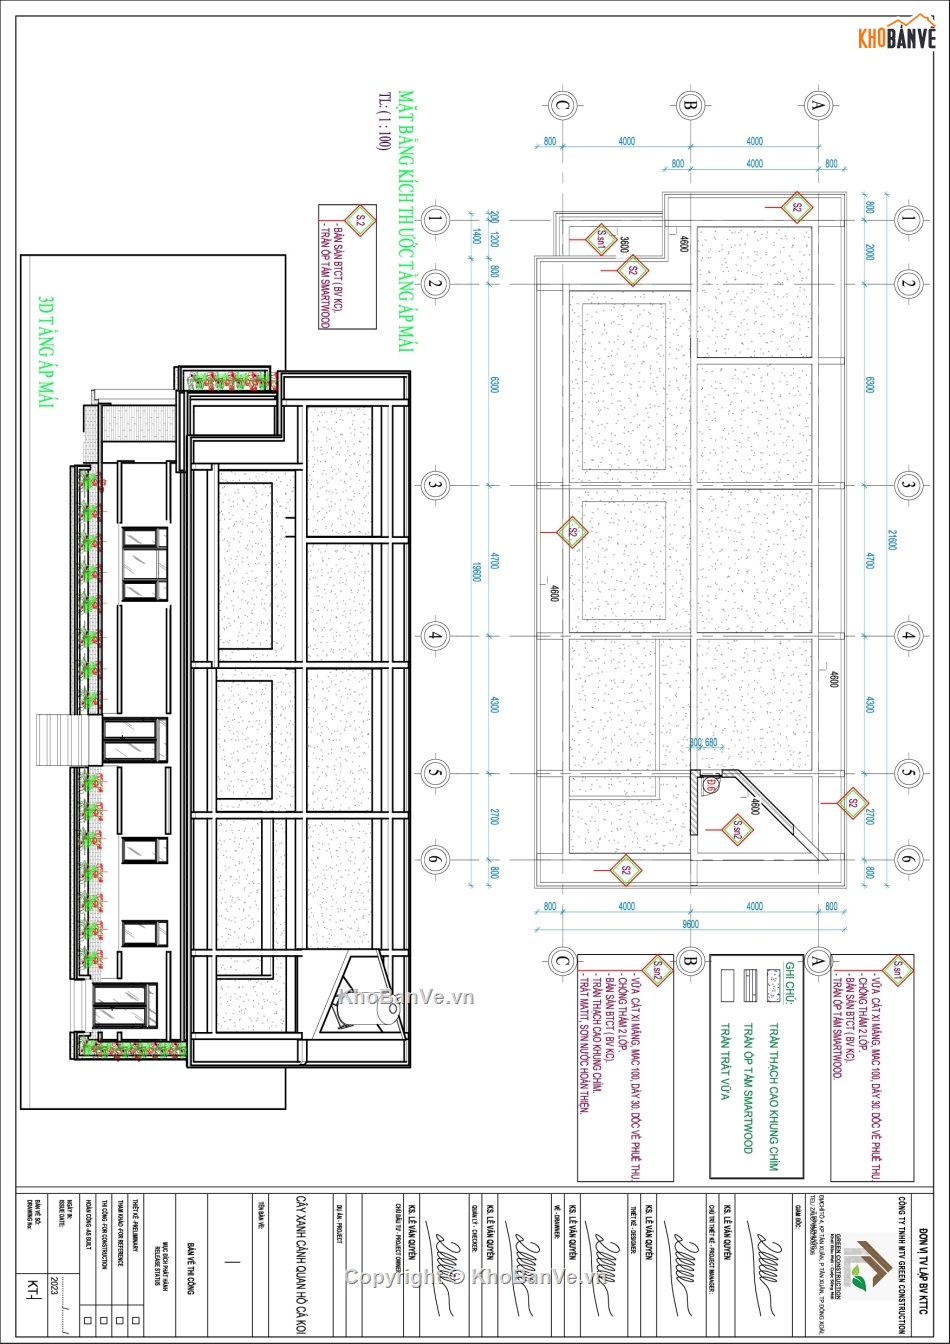 Hồ sơ thiết kế bản vẽ thi công nhà mái nhật 150m2,bản vẽ thiết kế nhà mái nhật,nhà mái nhật,nhà mái nhật 150m2